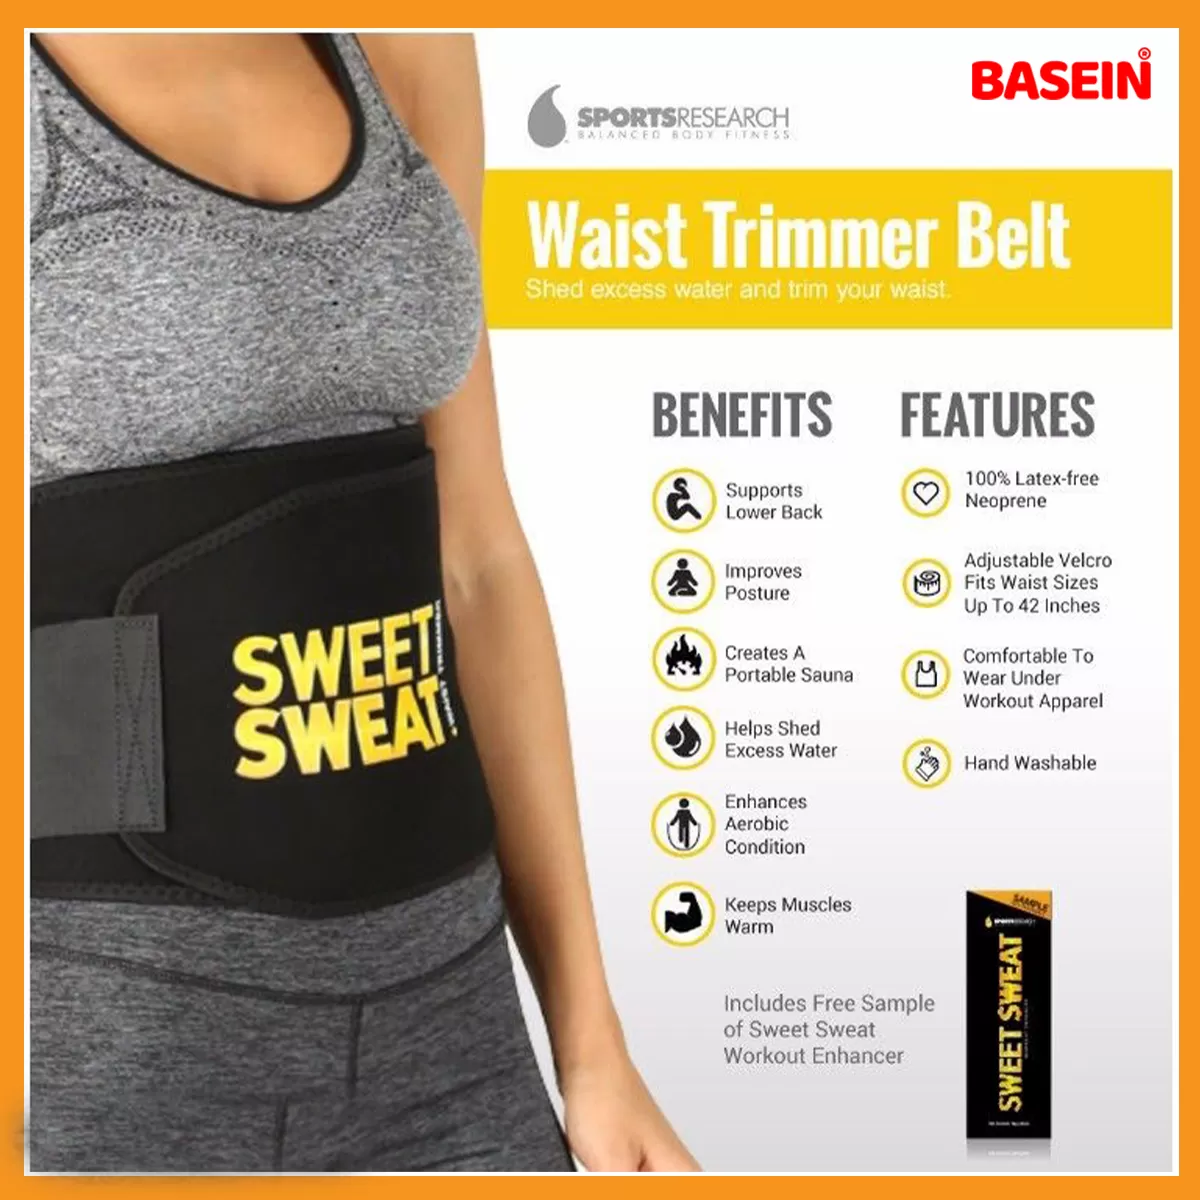 Buy BASEIN Sweet Sweat Waist Trimmer Waist Trainer Tummy Trimmer